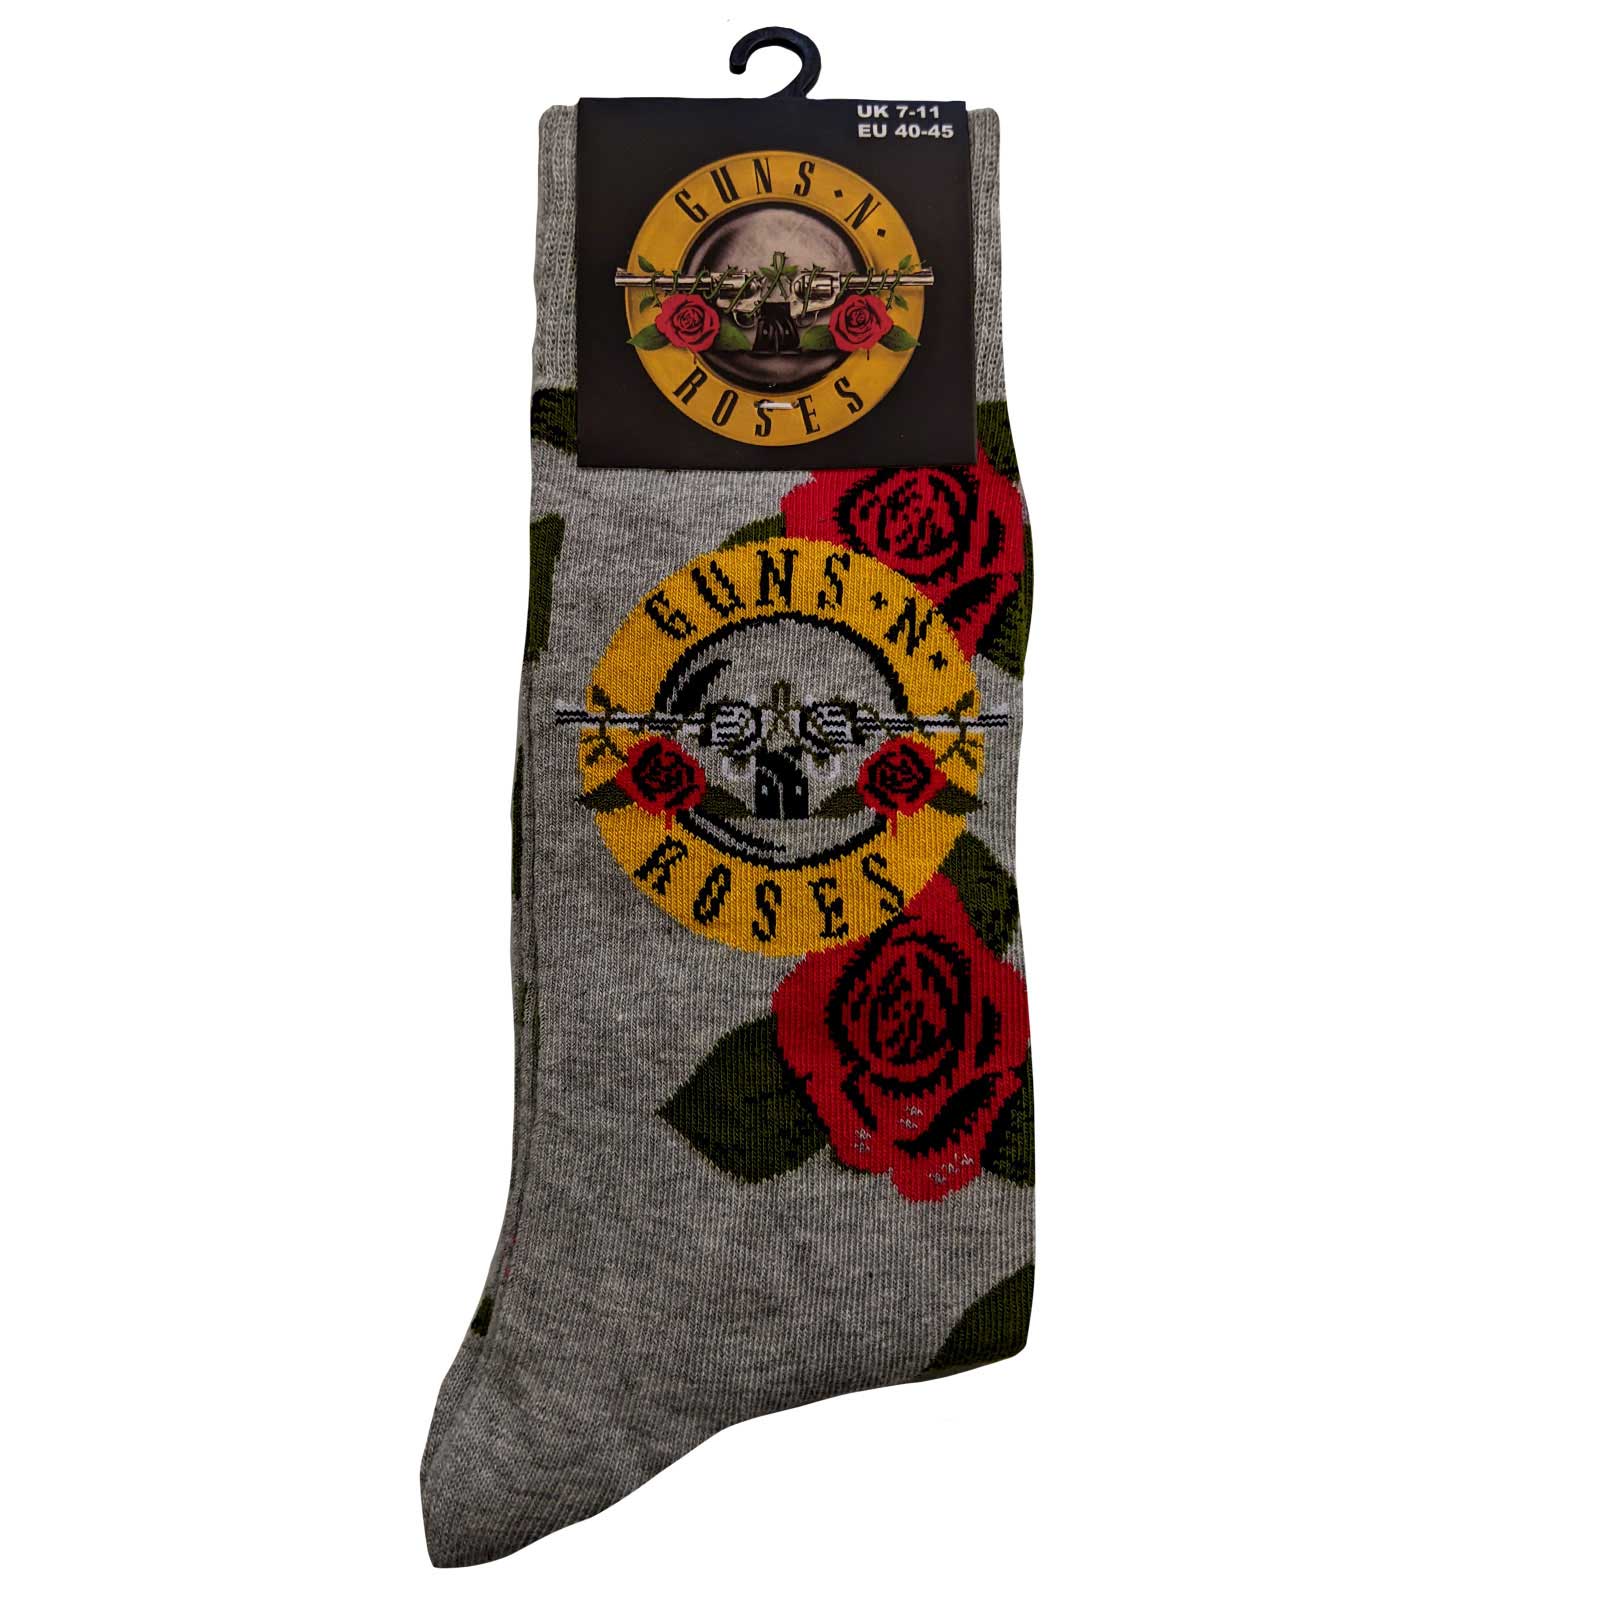 GUNS N’ ROSES – Unisex Ankle Socks: Bullet Roses